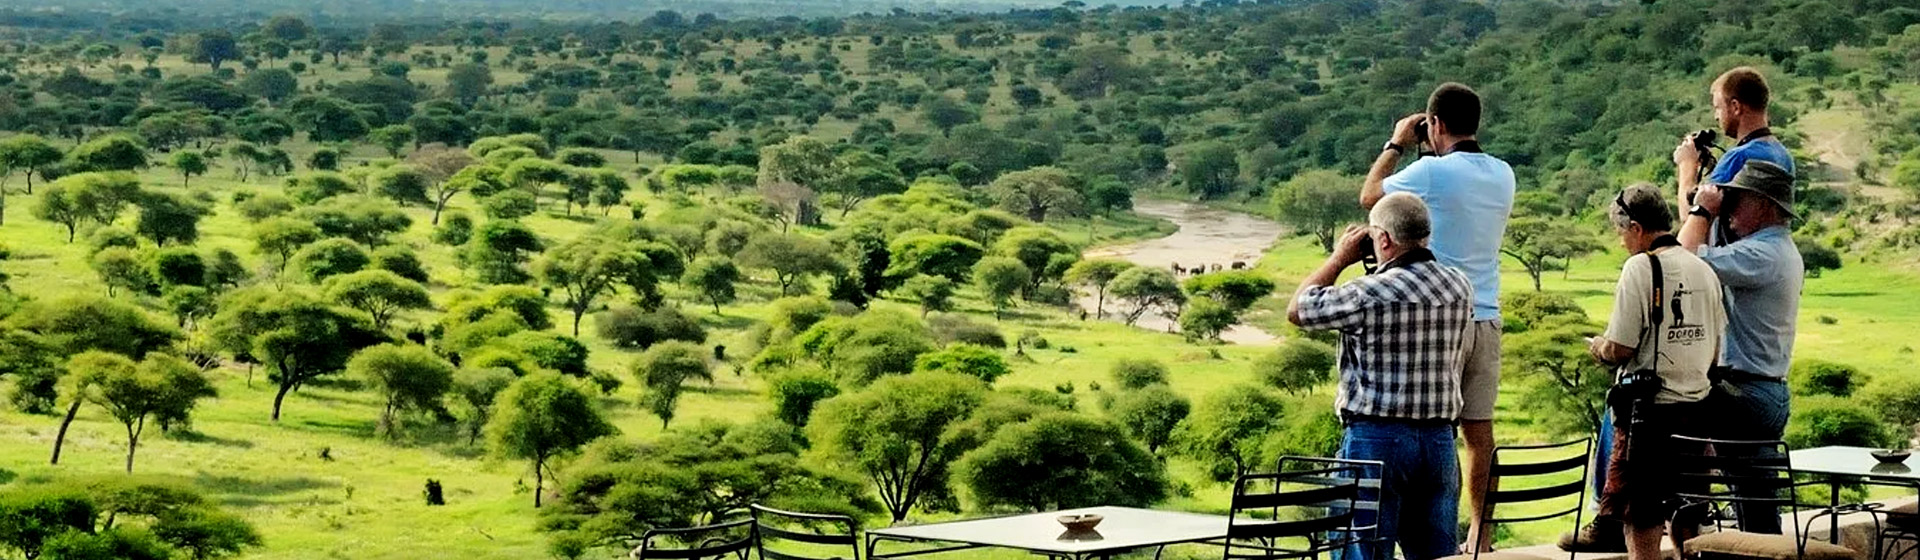 Tanzania shared Safari